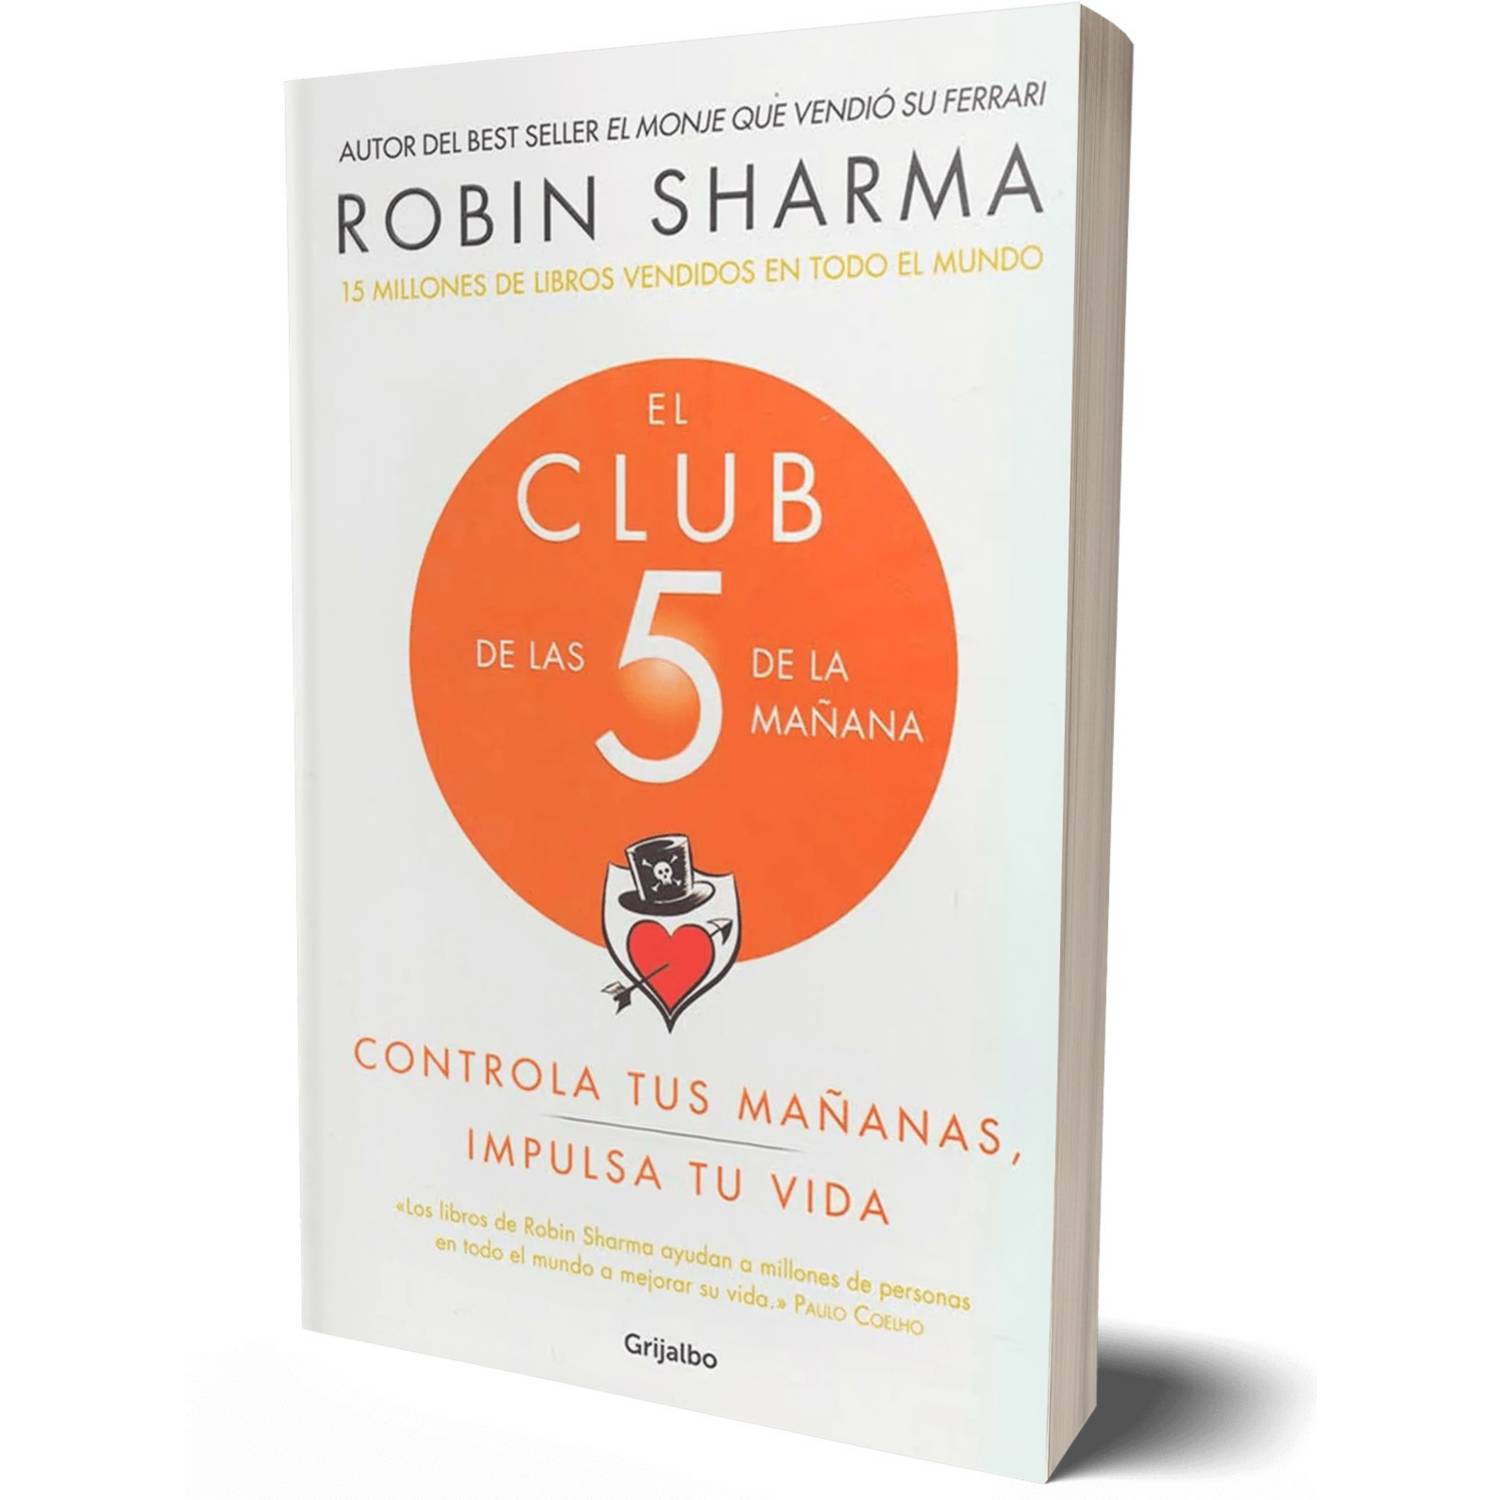 GRIJALBO El Club de las 5 de la mañana - Robin Sharma